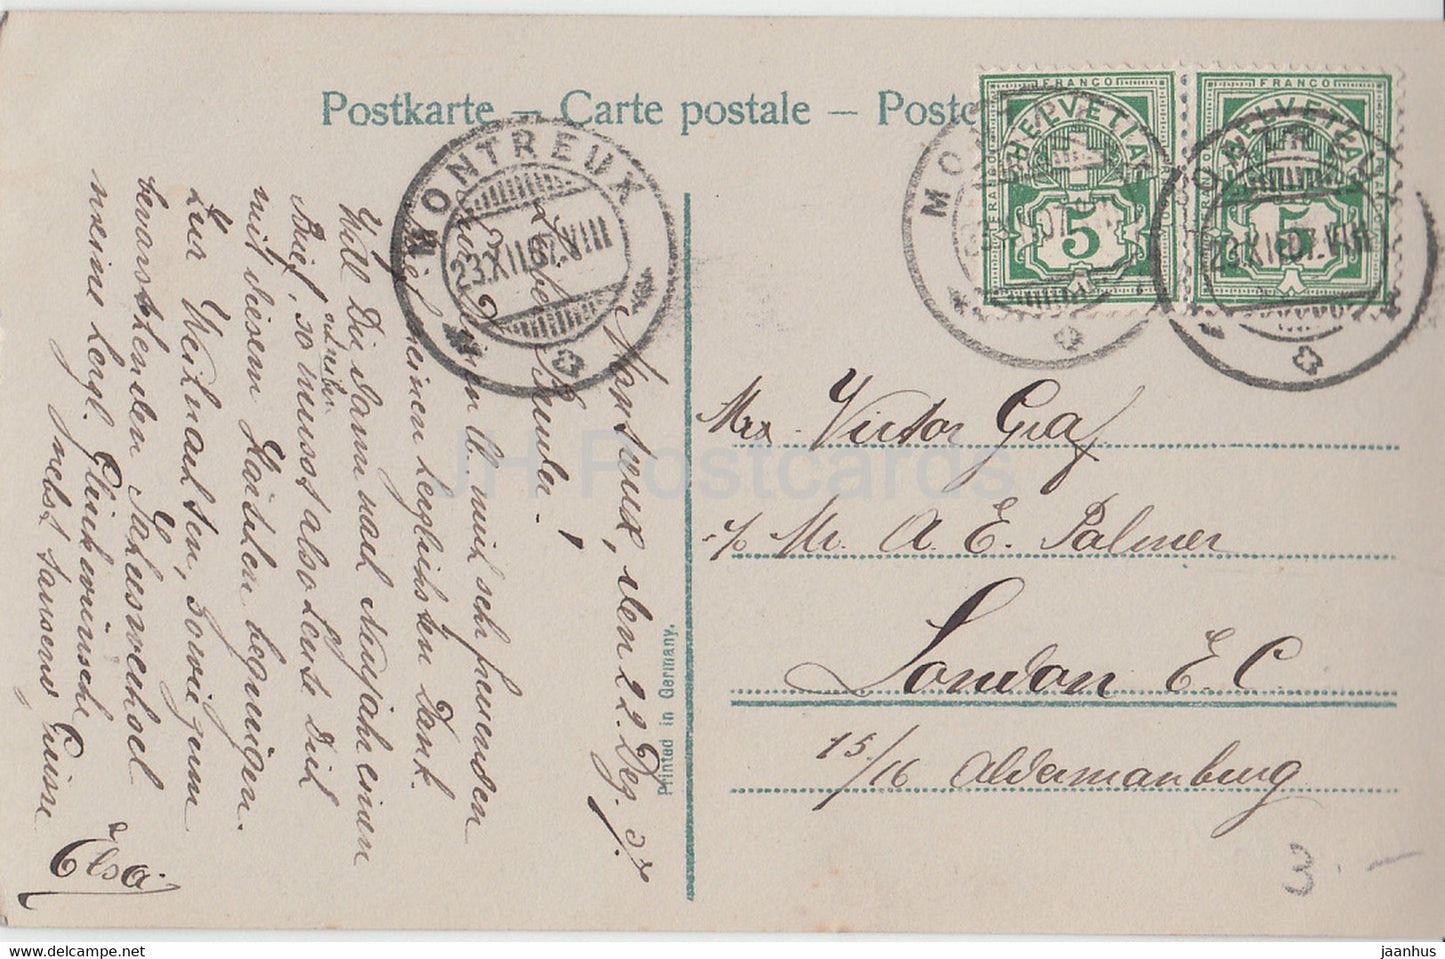 Carte de voeux de Noël - Joyeux Noel - enfants - filles - 3324/2 - carte postale ancienne - 1907 - France - occasion